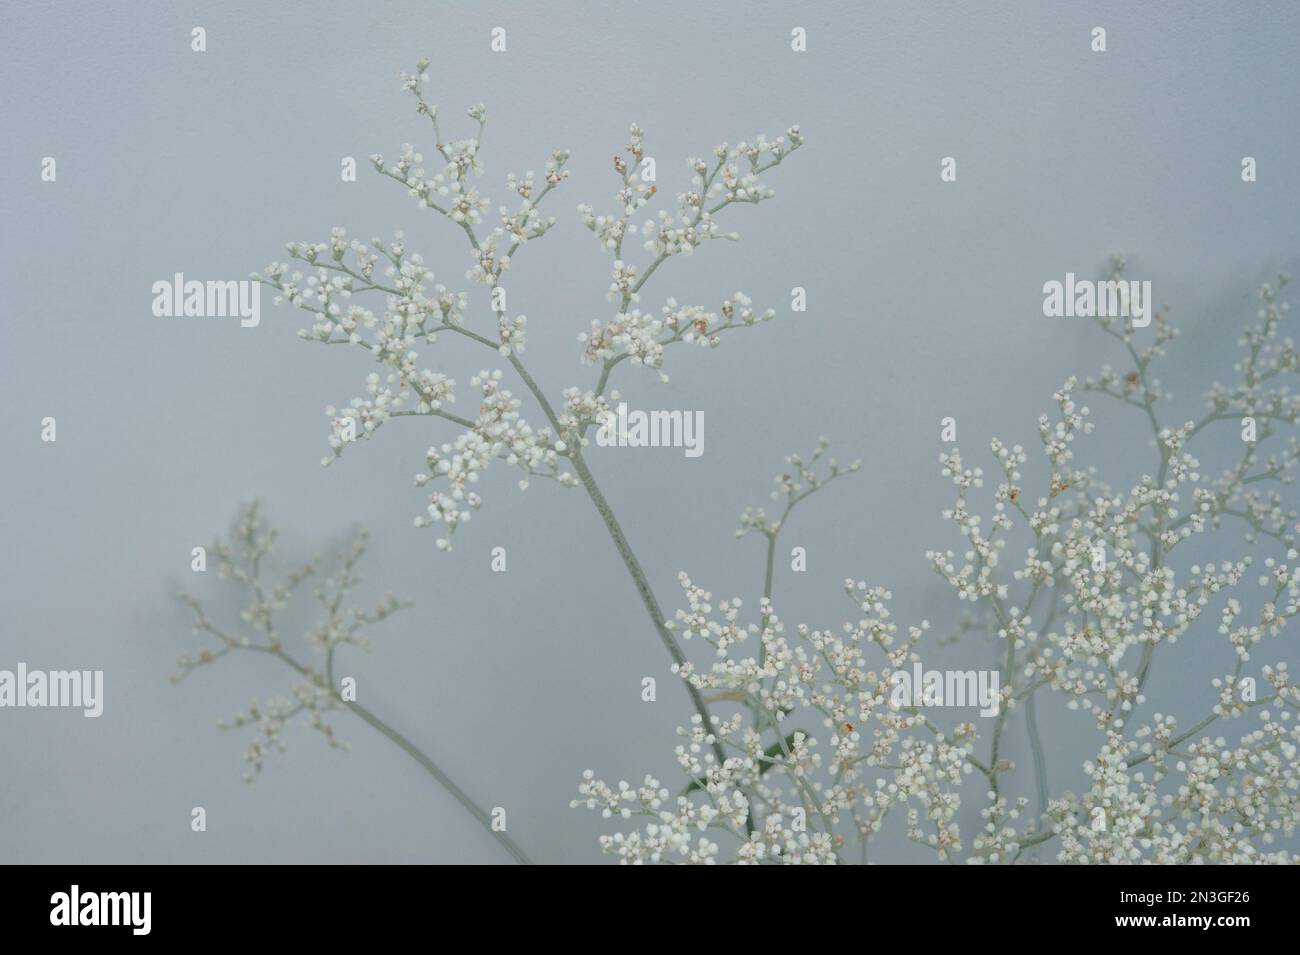 Studio shot of an annual Eriogonum (Eriogonum annuum) against a grey background; Studio Stock Photo